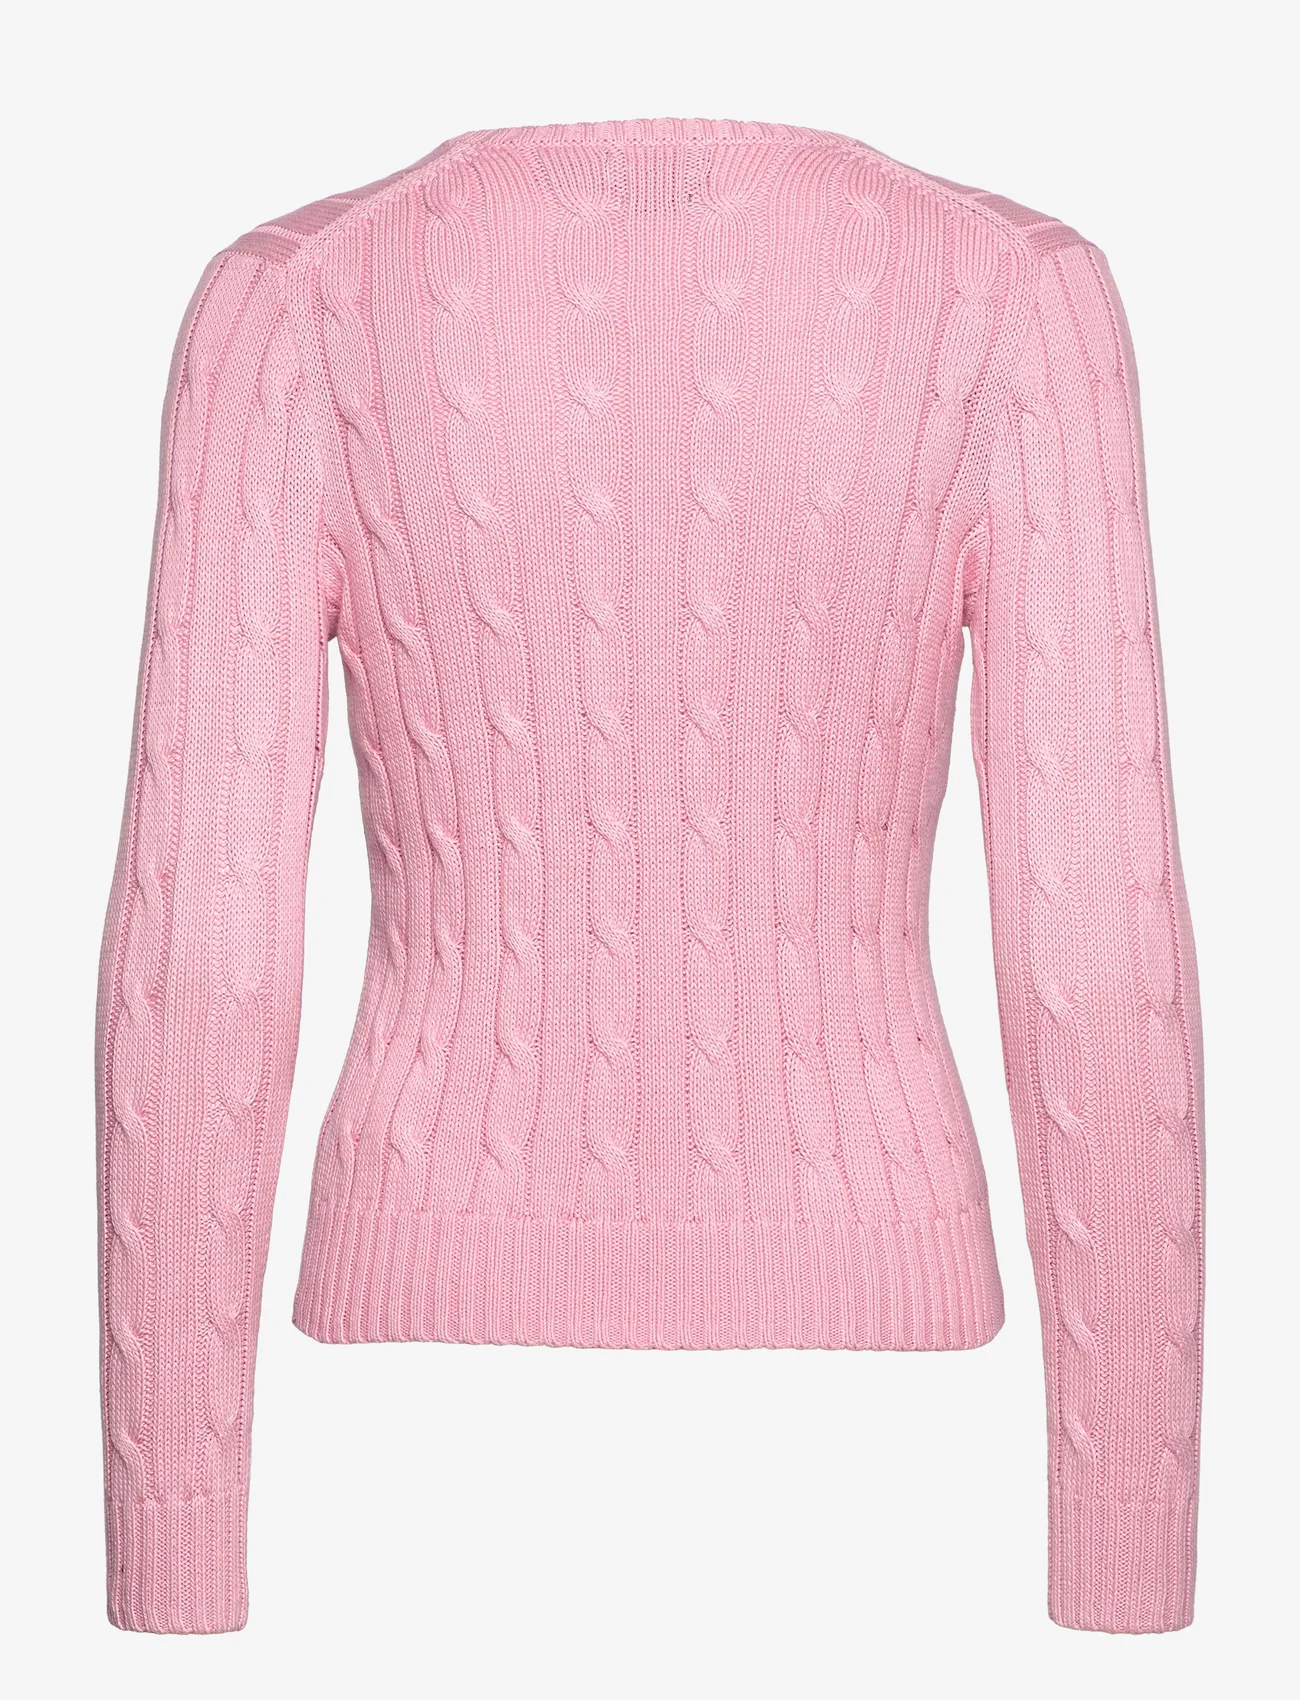 Polo Ralph Lauren - Cable-Knit Cotton V-Neck Sweater - džemperi - carmel pink - 1